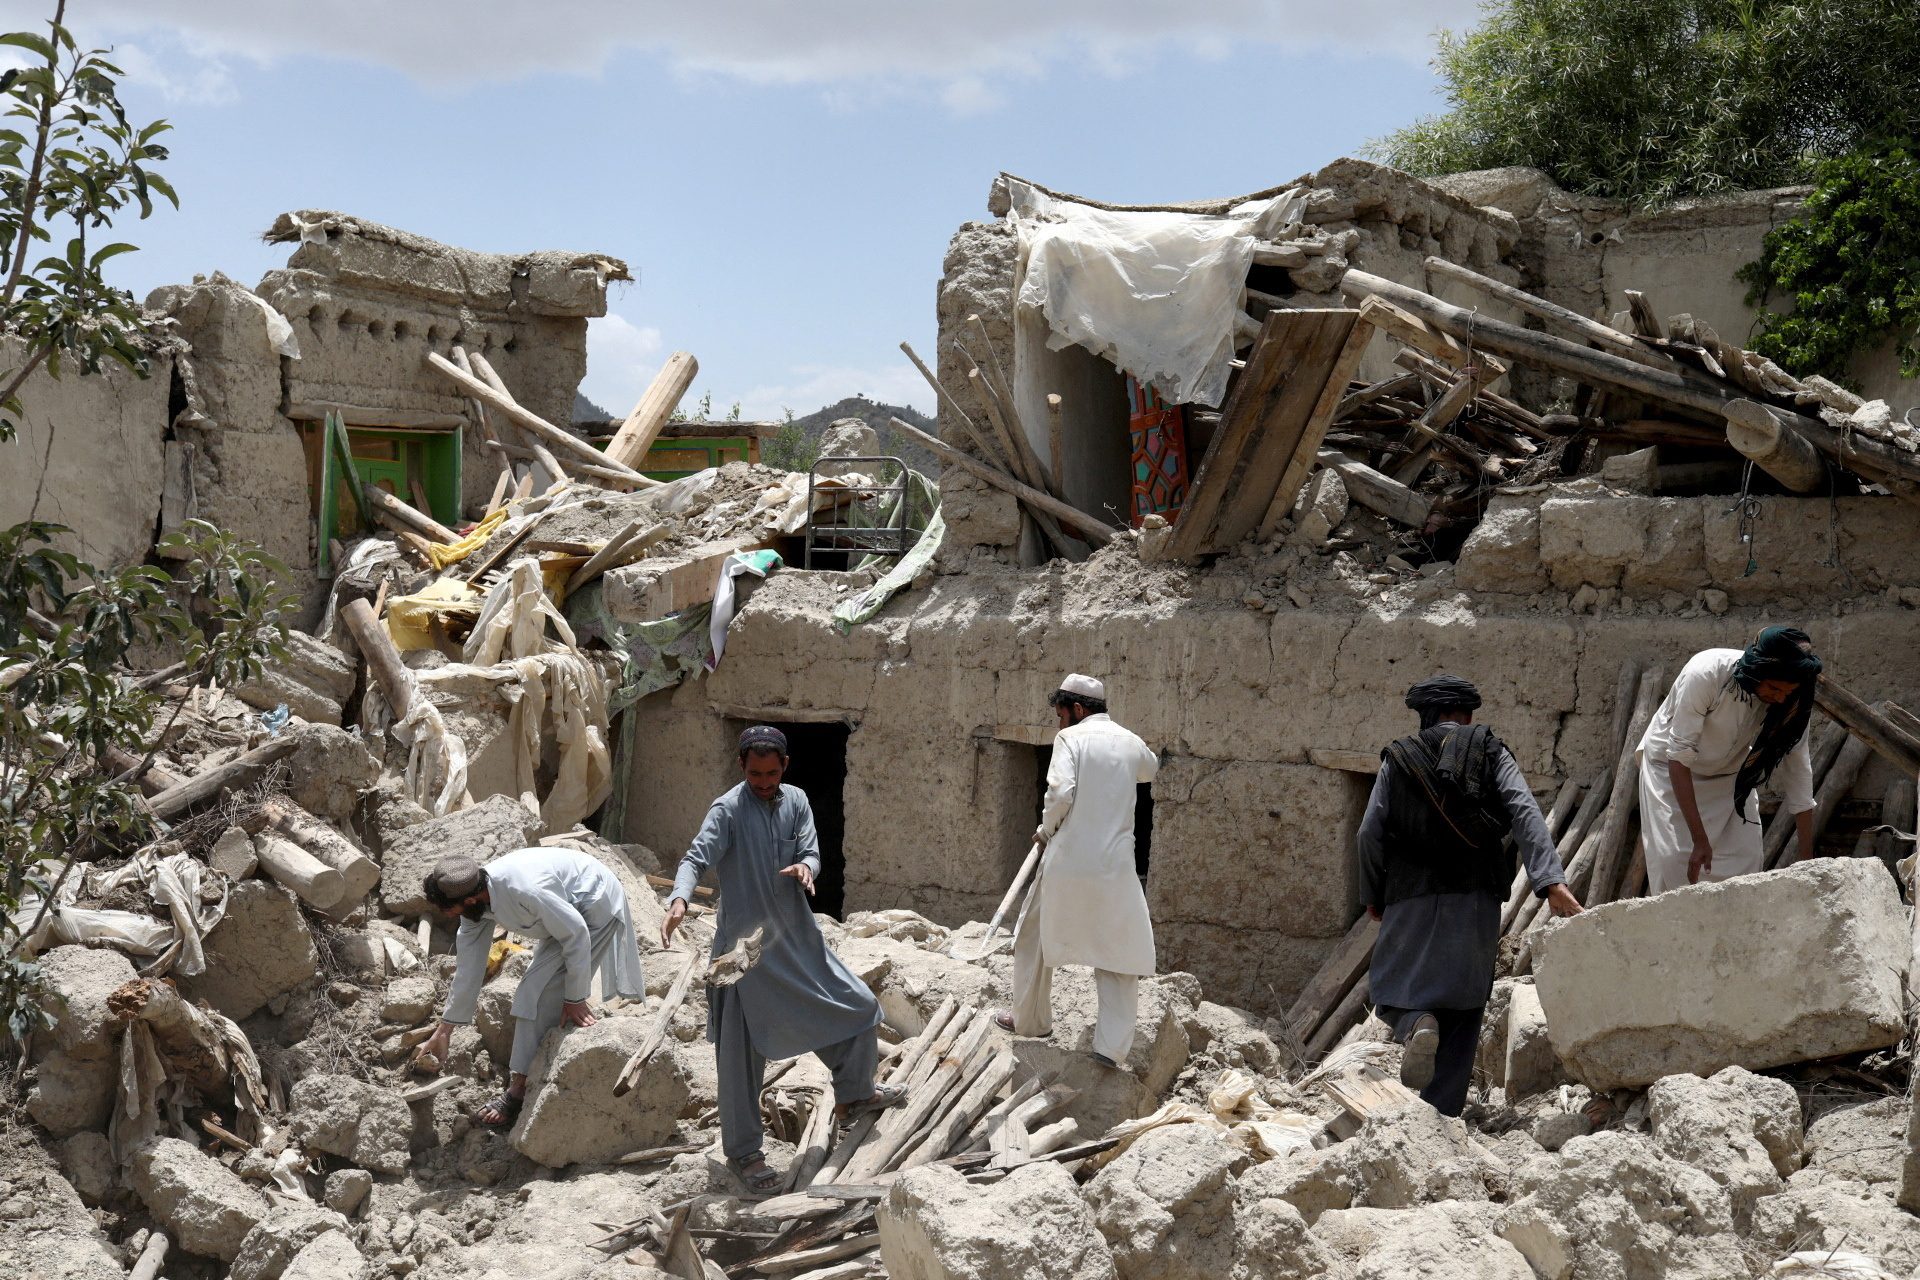 Afghanistan seeks help for earthquake survivors as aftershock kills 5